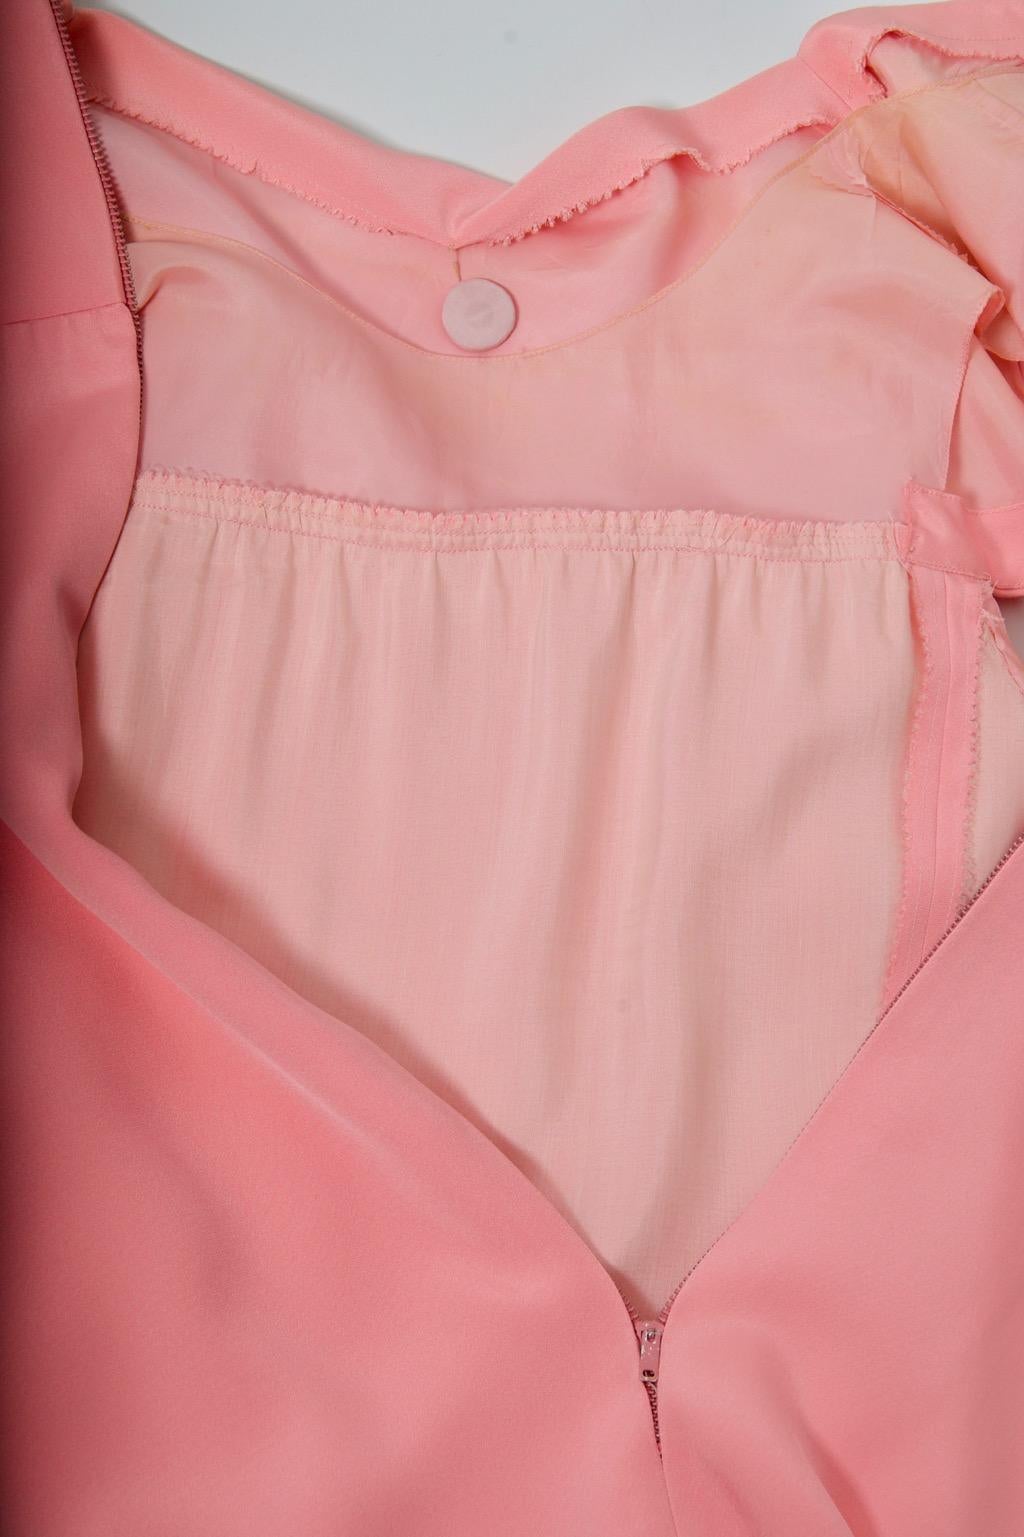 Henri Bendel 1960s Pink Silk Dress For Sale 1